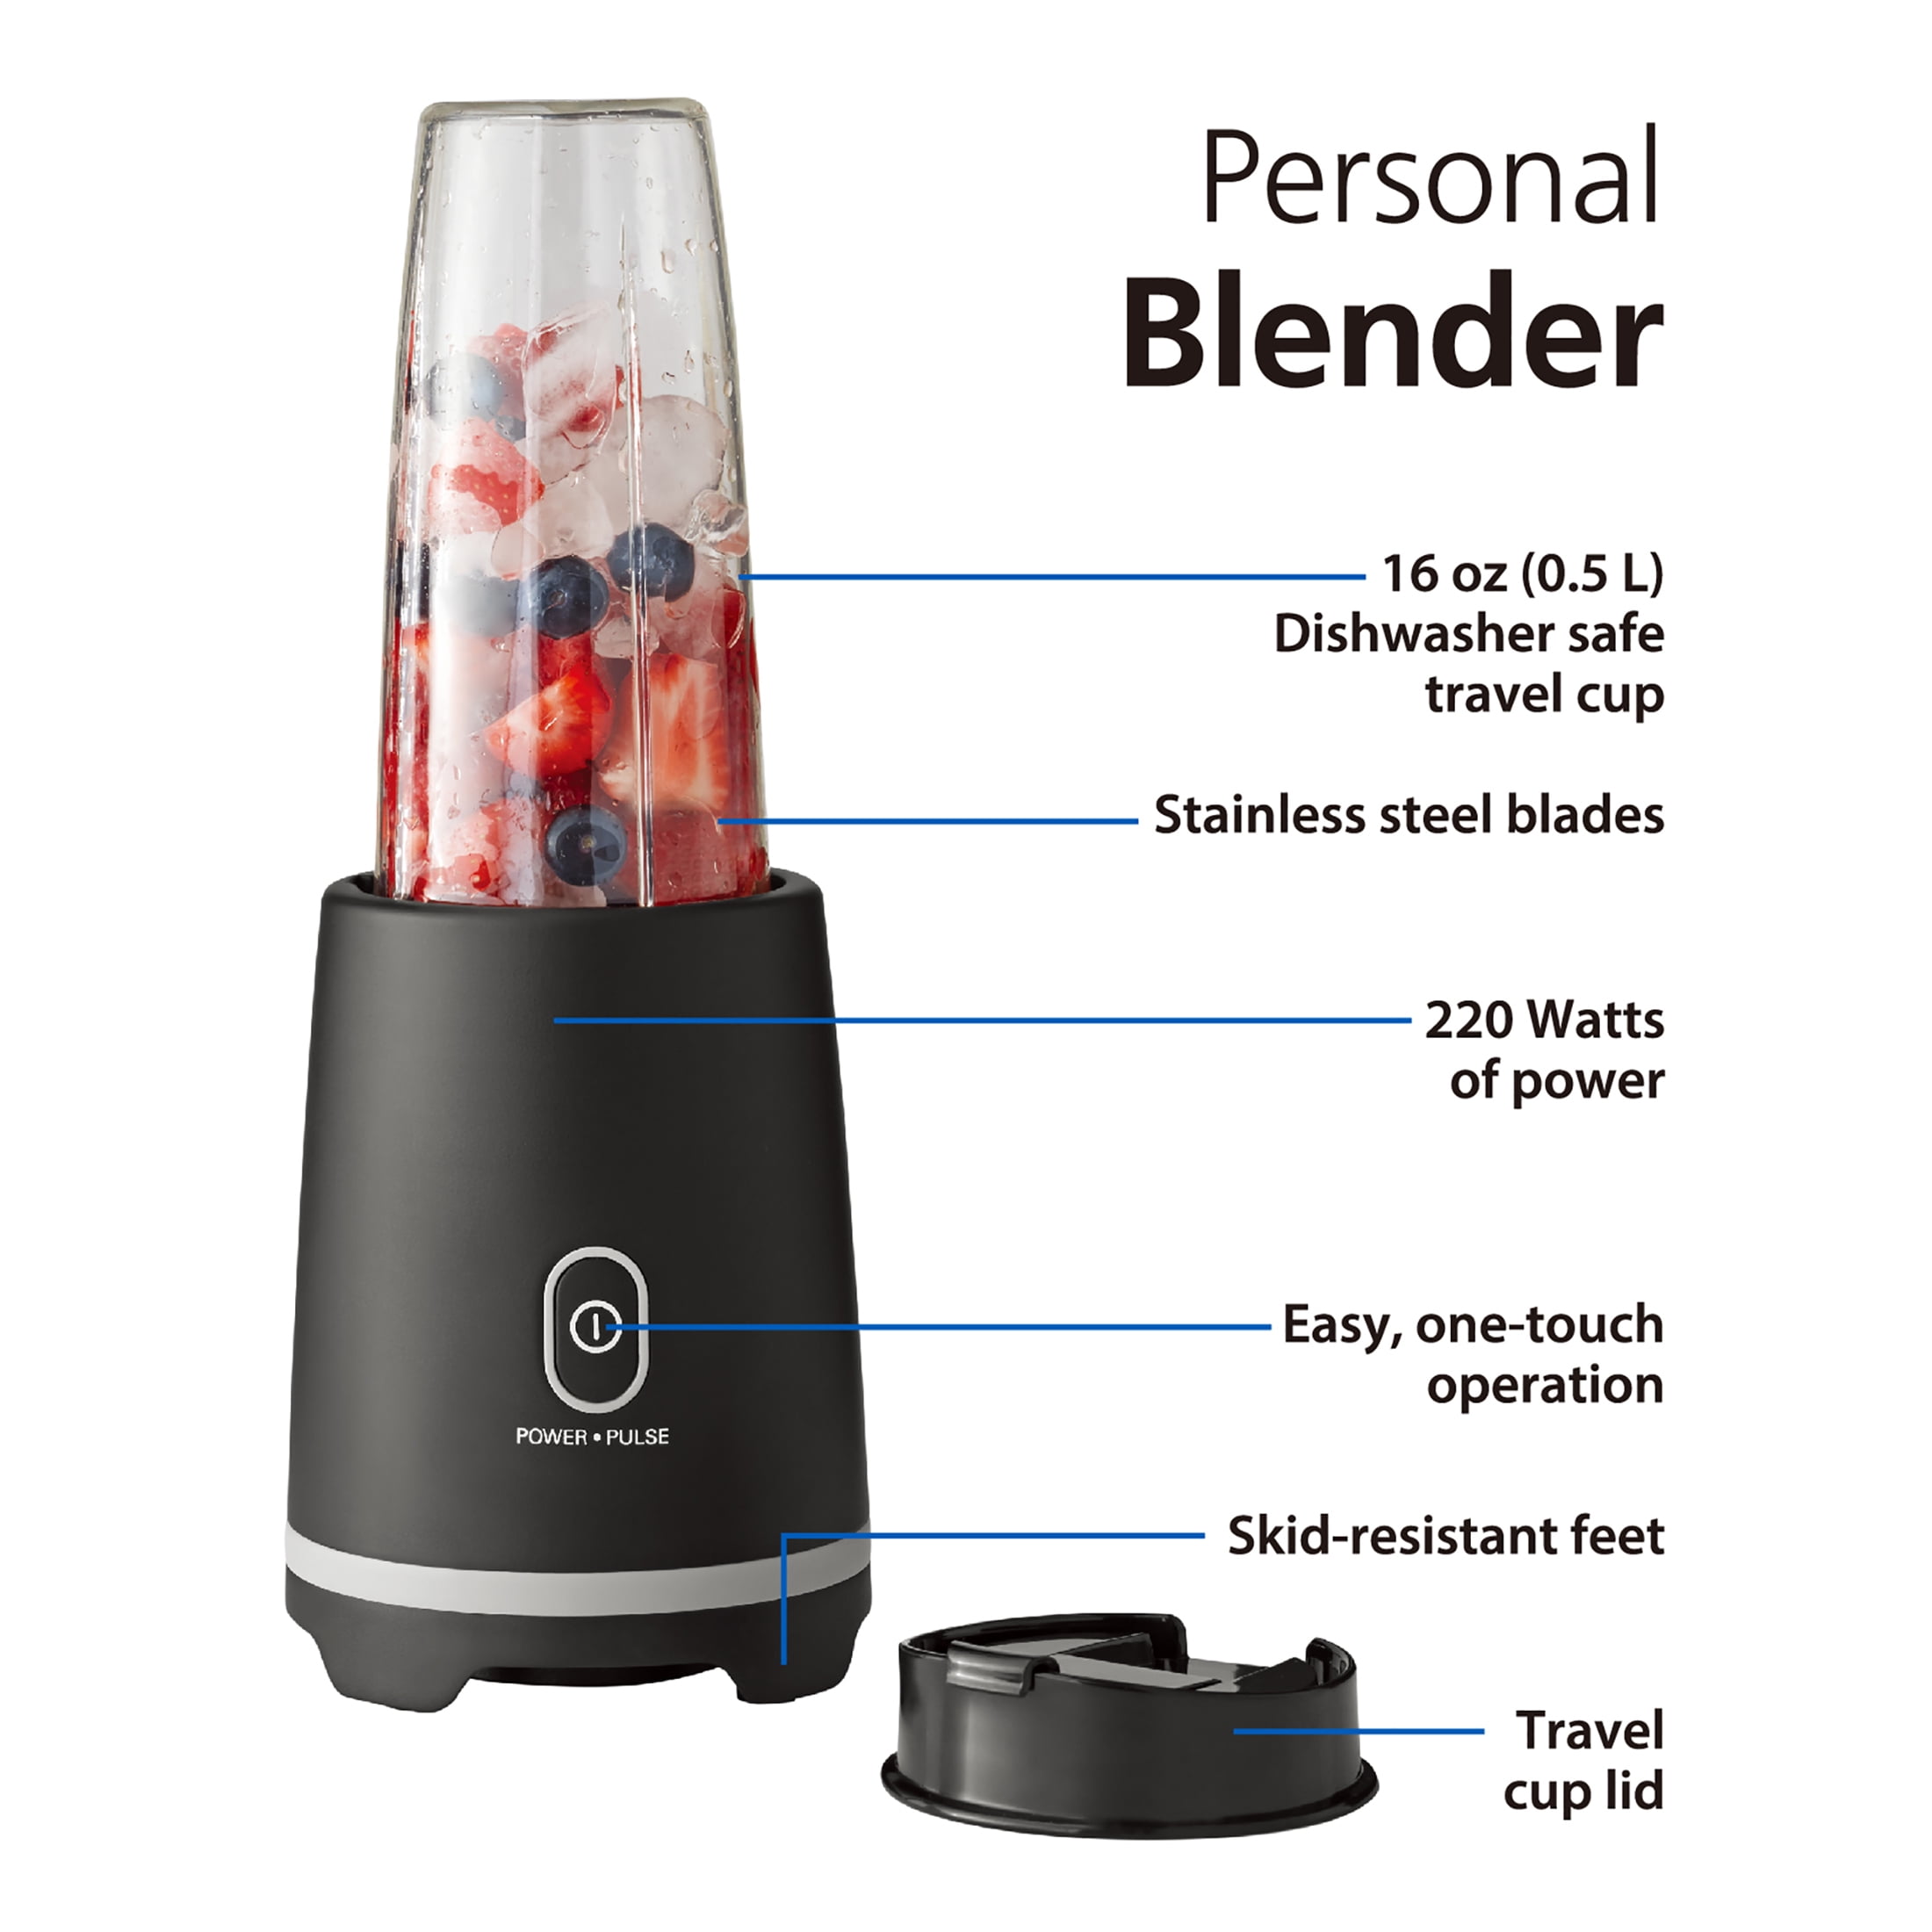 Mainstays Personal Blender Single Serve Individual Blender Smoothie Maker